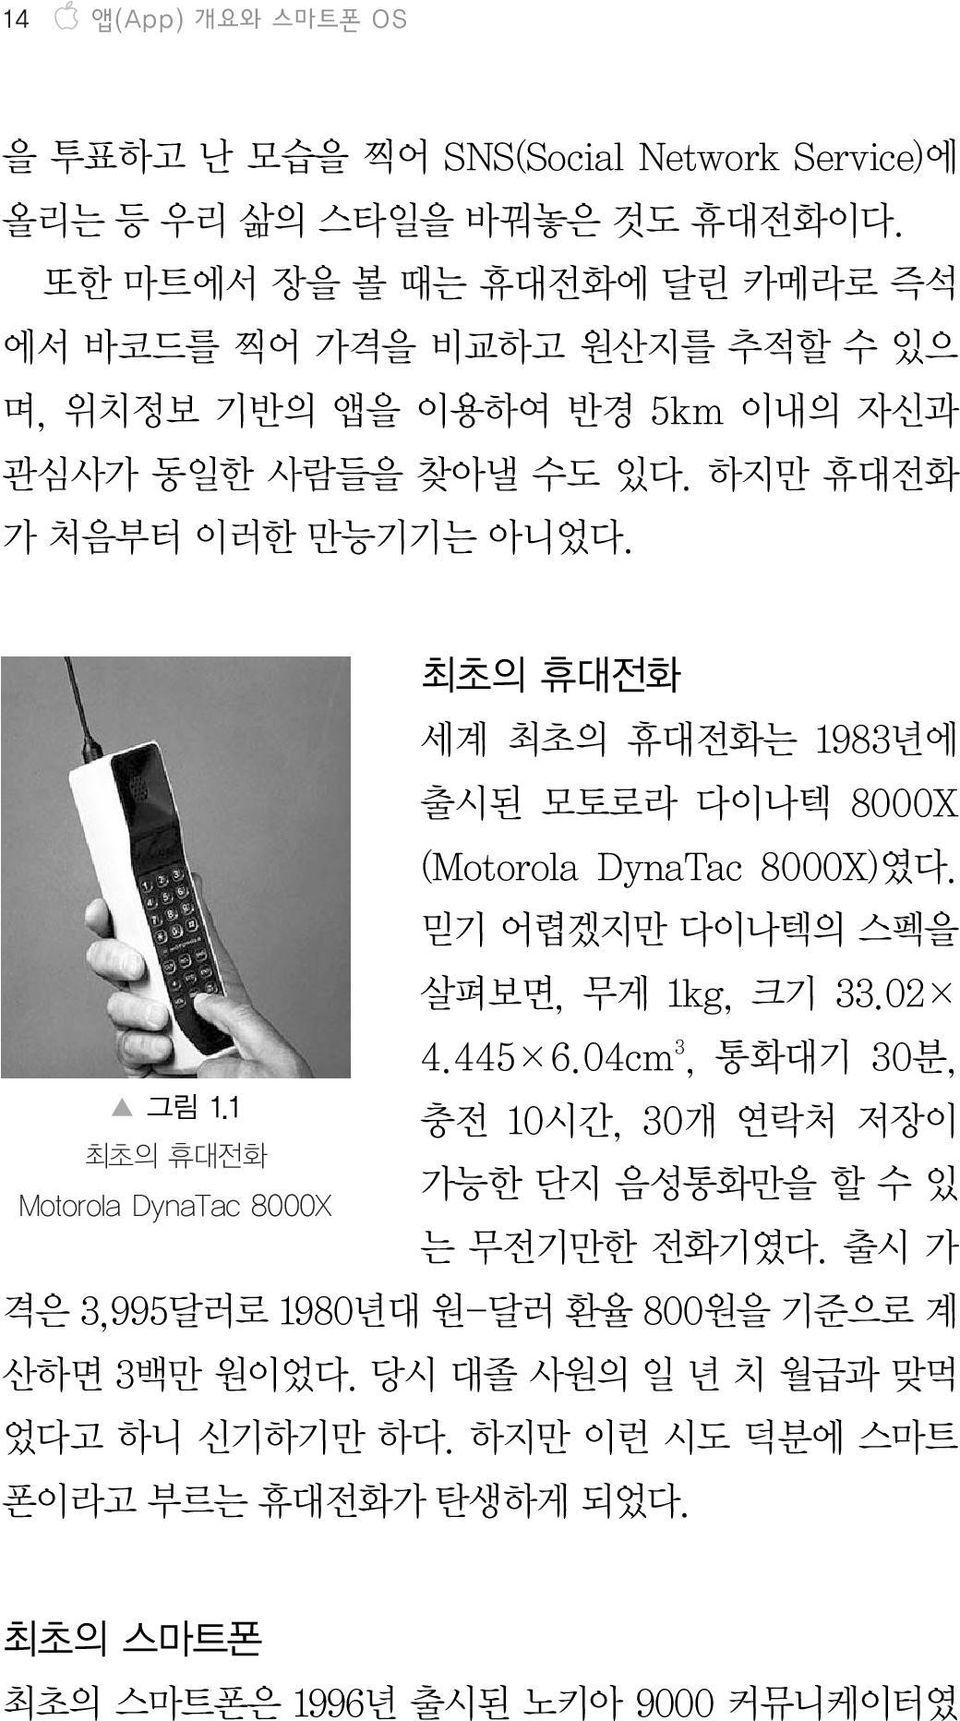 1 최초의 휴대전화 Motorola DynaTac 8000X 최초의 휴대전화 세계 최초의 휴대전화는 1983년에 출시된 모토로라 다이나텍 8000X (Motorola DynaTac 8000X)였다. 믿기 어렵겠지만 다이나텍의 스펙을 살펴보면, 무게 1kg, 크기 33.02 4.445 6.